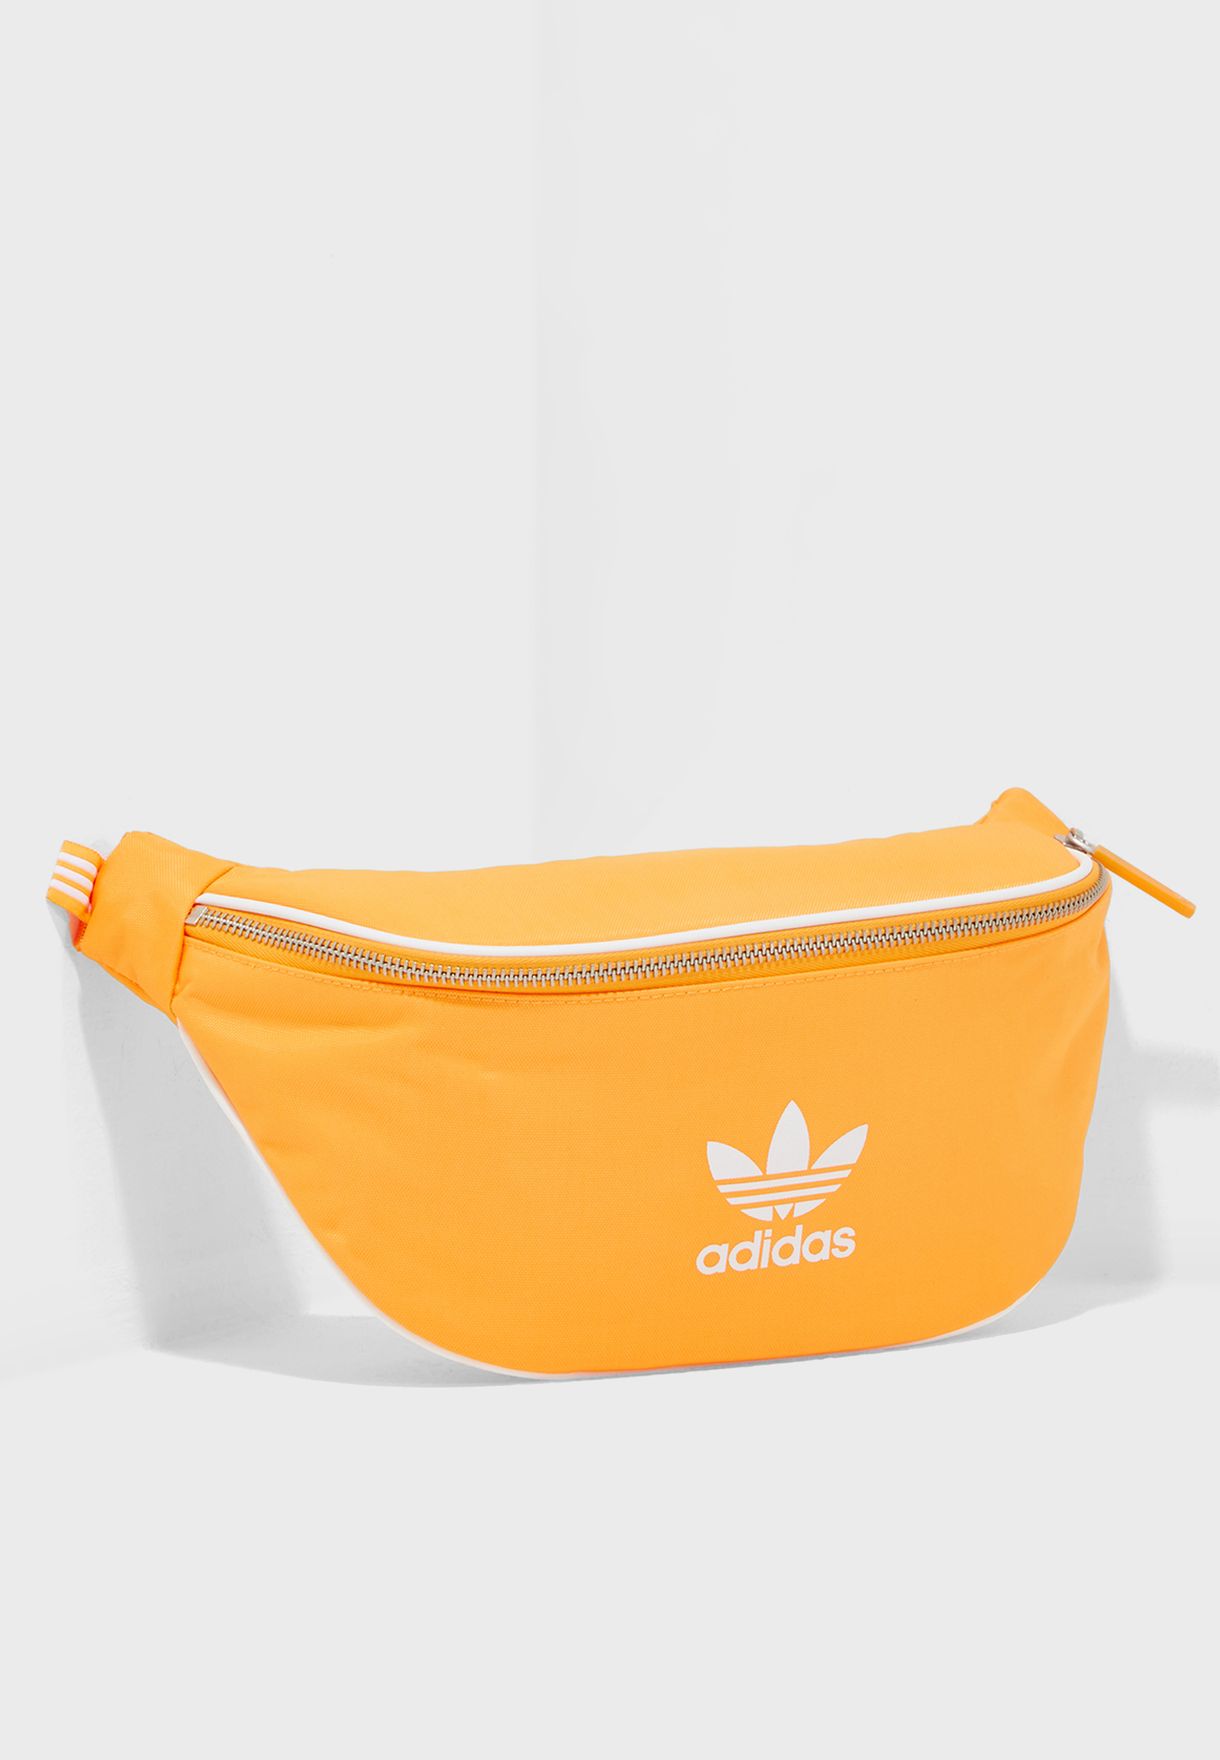 adidas orange fanny pack